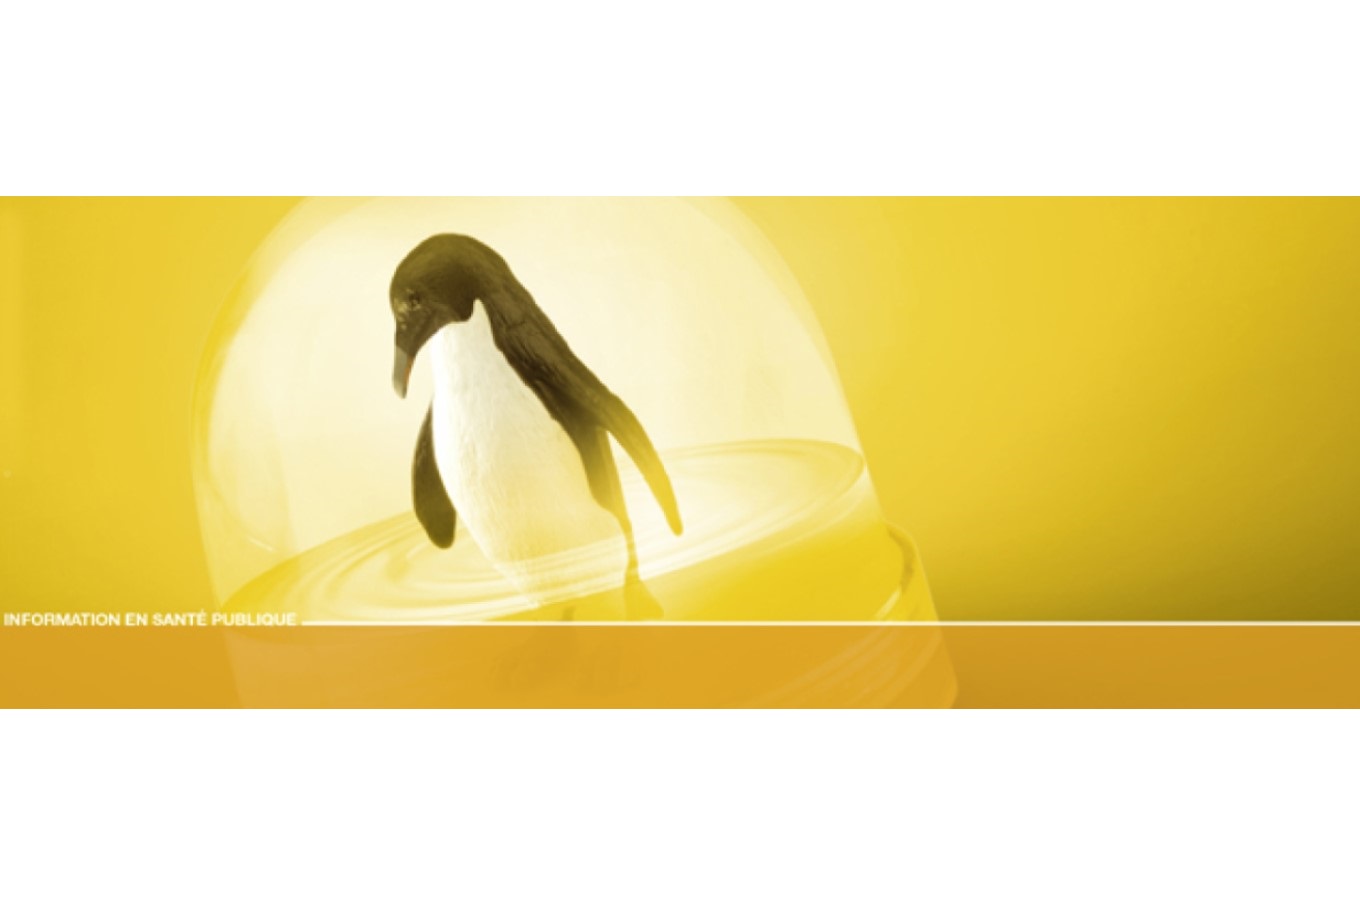 Illustration d'un pingouin avec les pattes dans l'eau sur un fond jaune